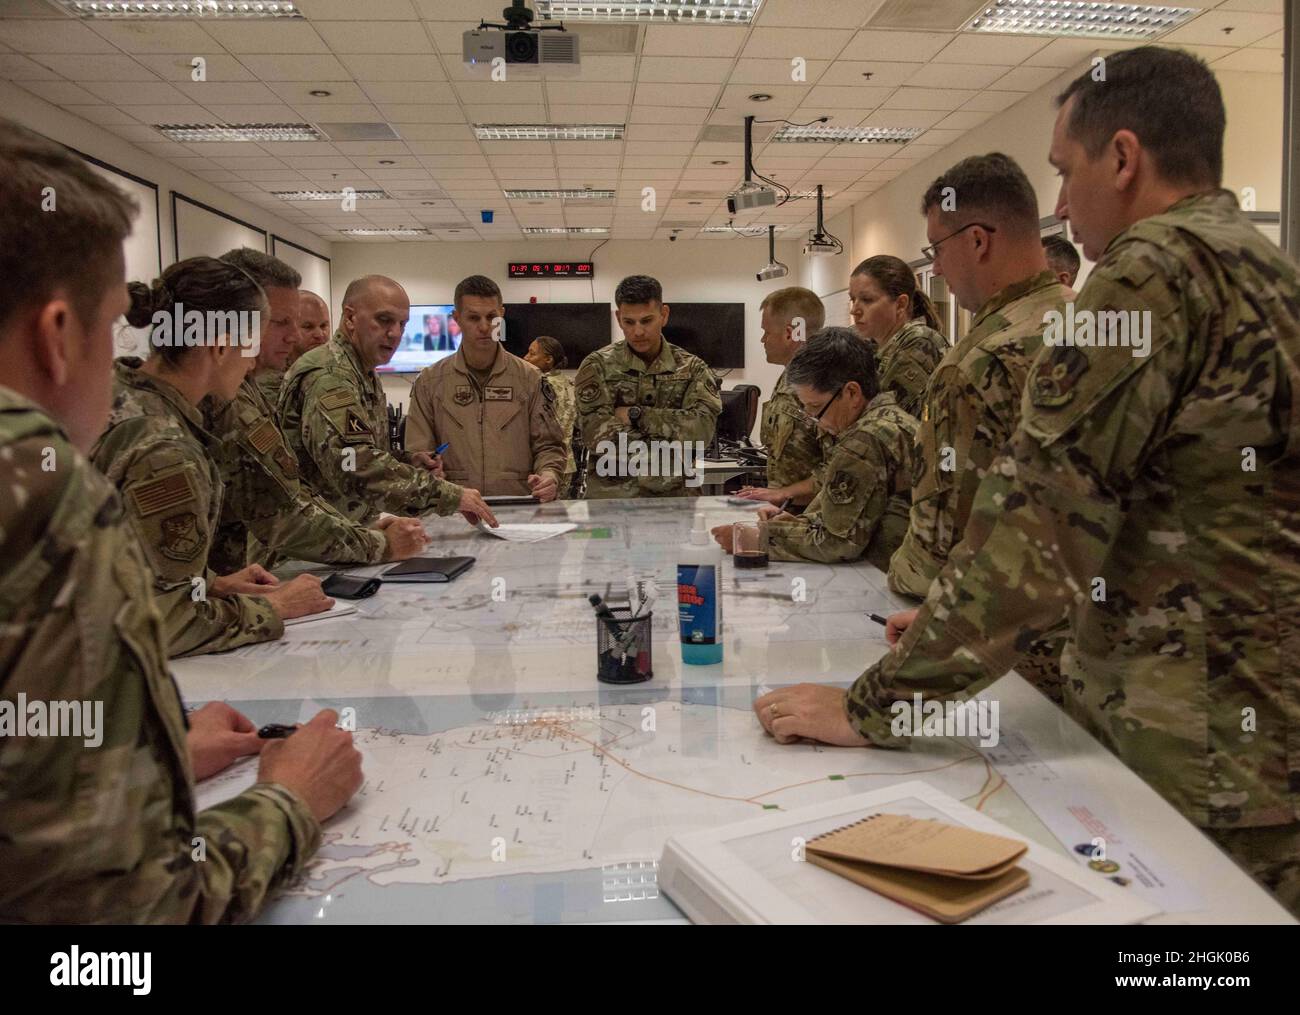 Les dirigeants de la 379th Air Expeditionary Wing se réunissent pour un exposé de planification de la mission concernant les opérations d'évacuation en Afghanistan le 25 août 2021, à la base aérienne d'Al Udeid, au Qatar.Au cours du mémoire, les commandants ont discuté de la logistique et des moyens d'améliorer le processus d'amener les personnes évacuées d'Afghanistan à Al Udeid AB. Banque D'Images